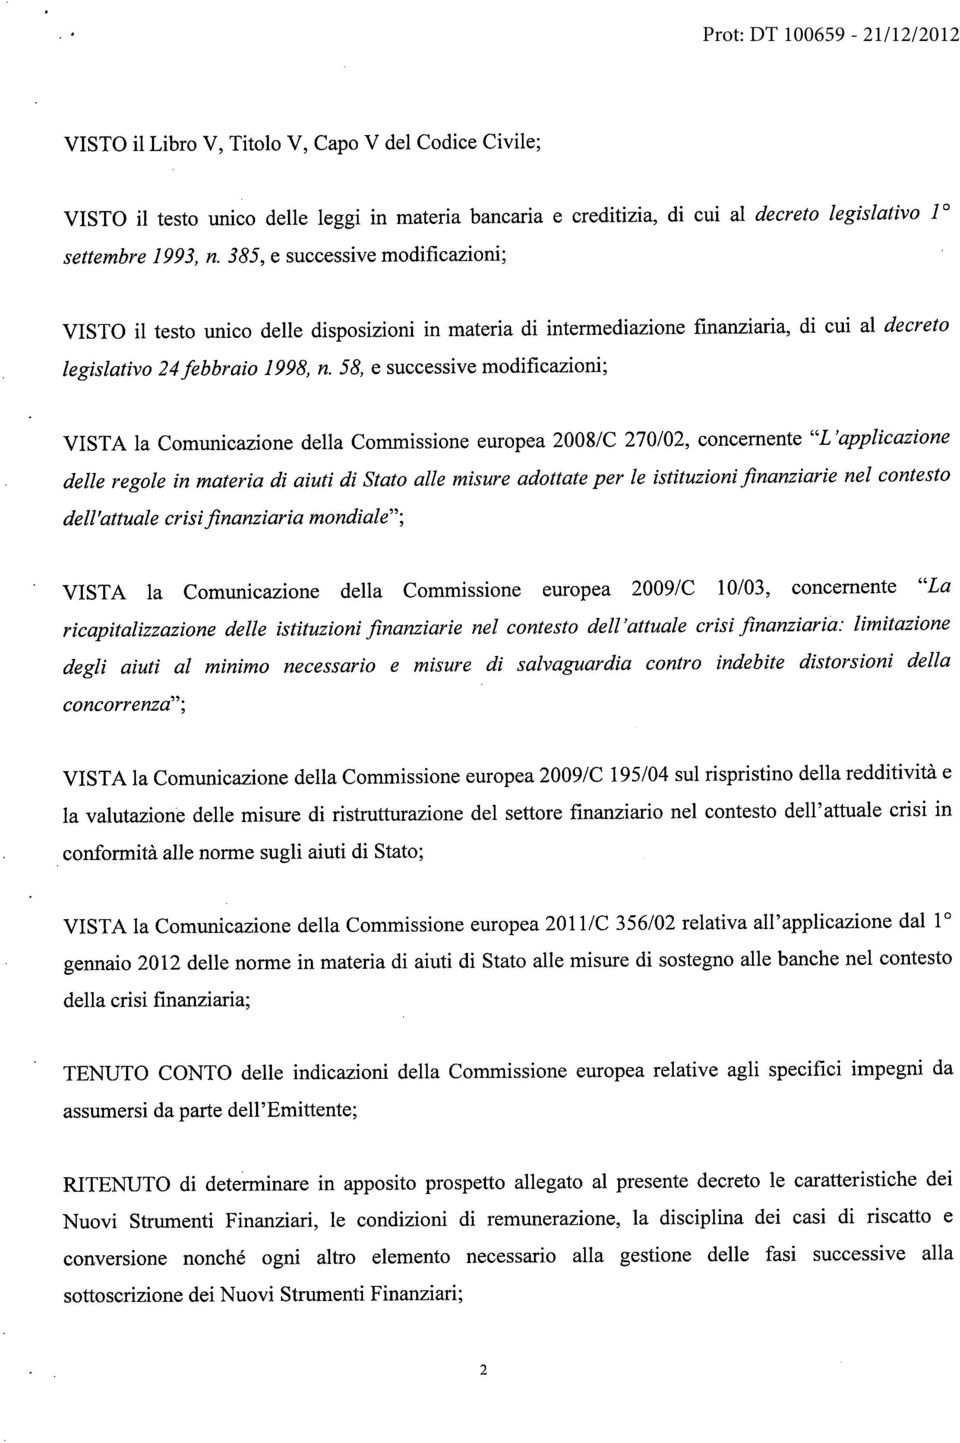 58, e successive modificazioni; VISTA la Comunicazione della Commissione europea 2008/C 270/02, concernente "L'applicazione delle regole in materia di aiuti di Stato alle misure adottate per le